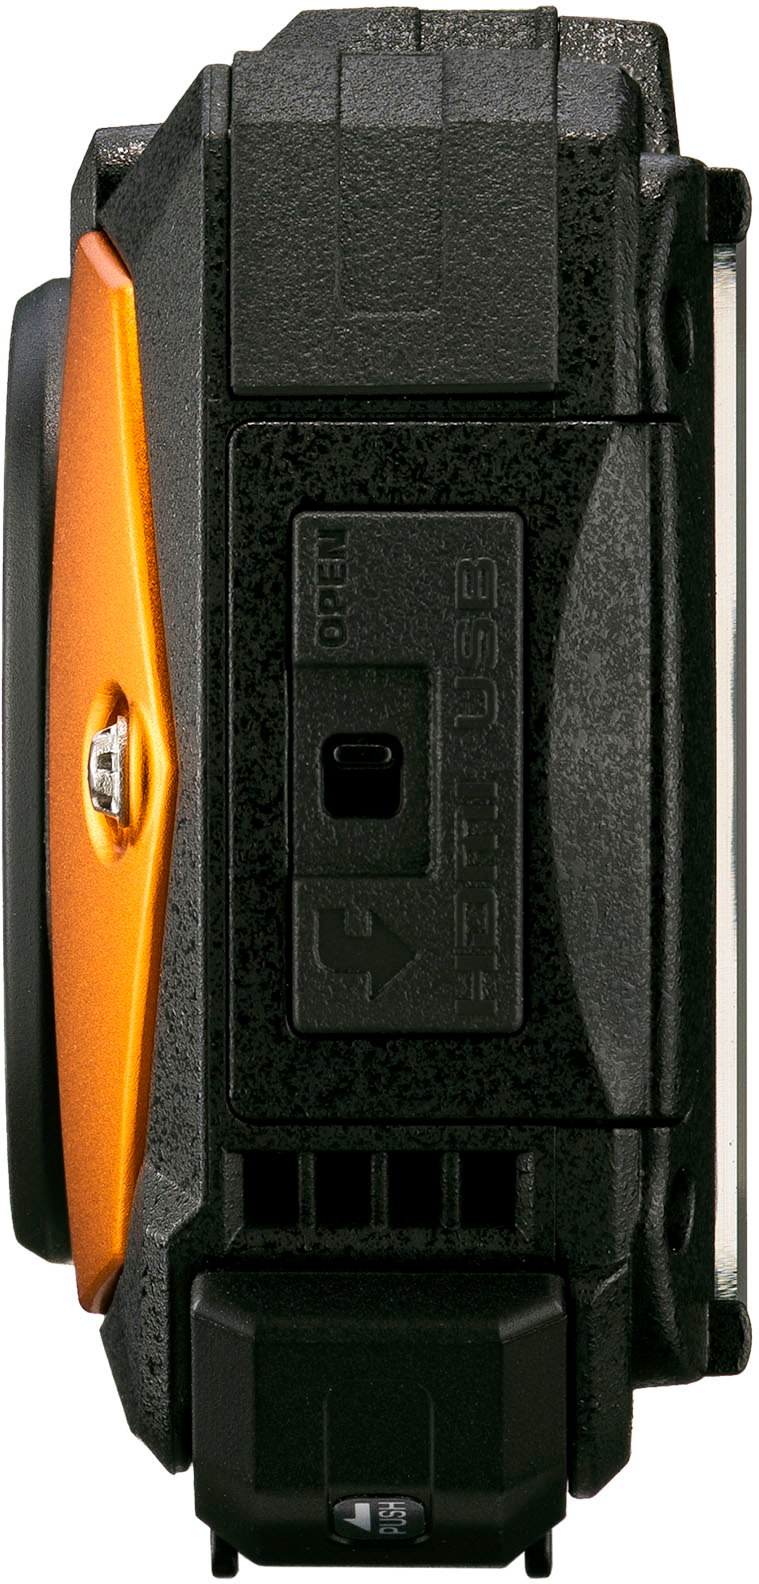 Ricoh WG-80 16.0 Megapixel Waterproof Digital Camera Orange 03128 - Best Buy